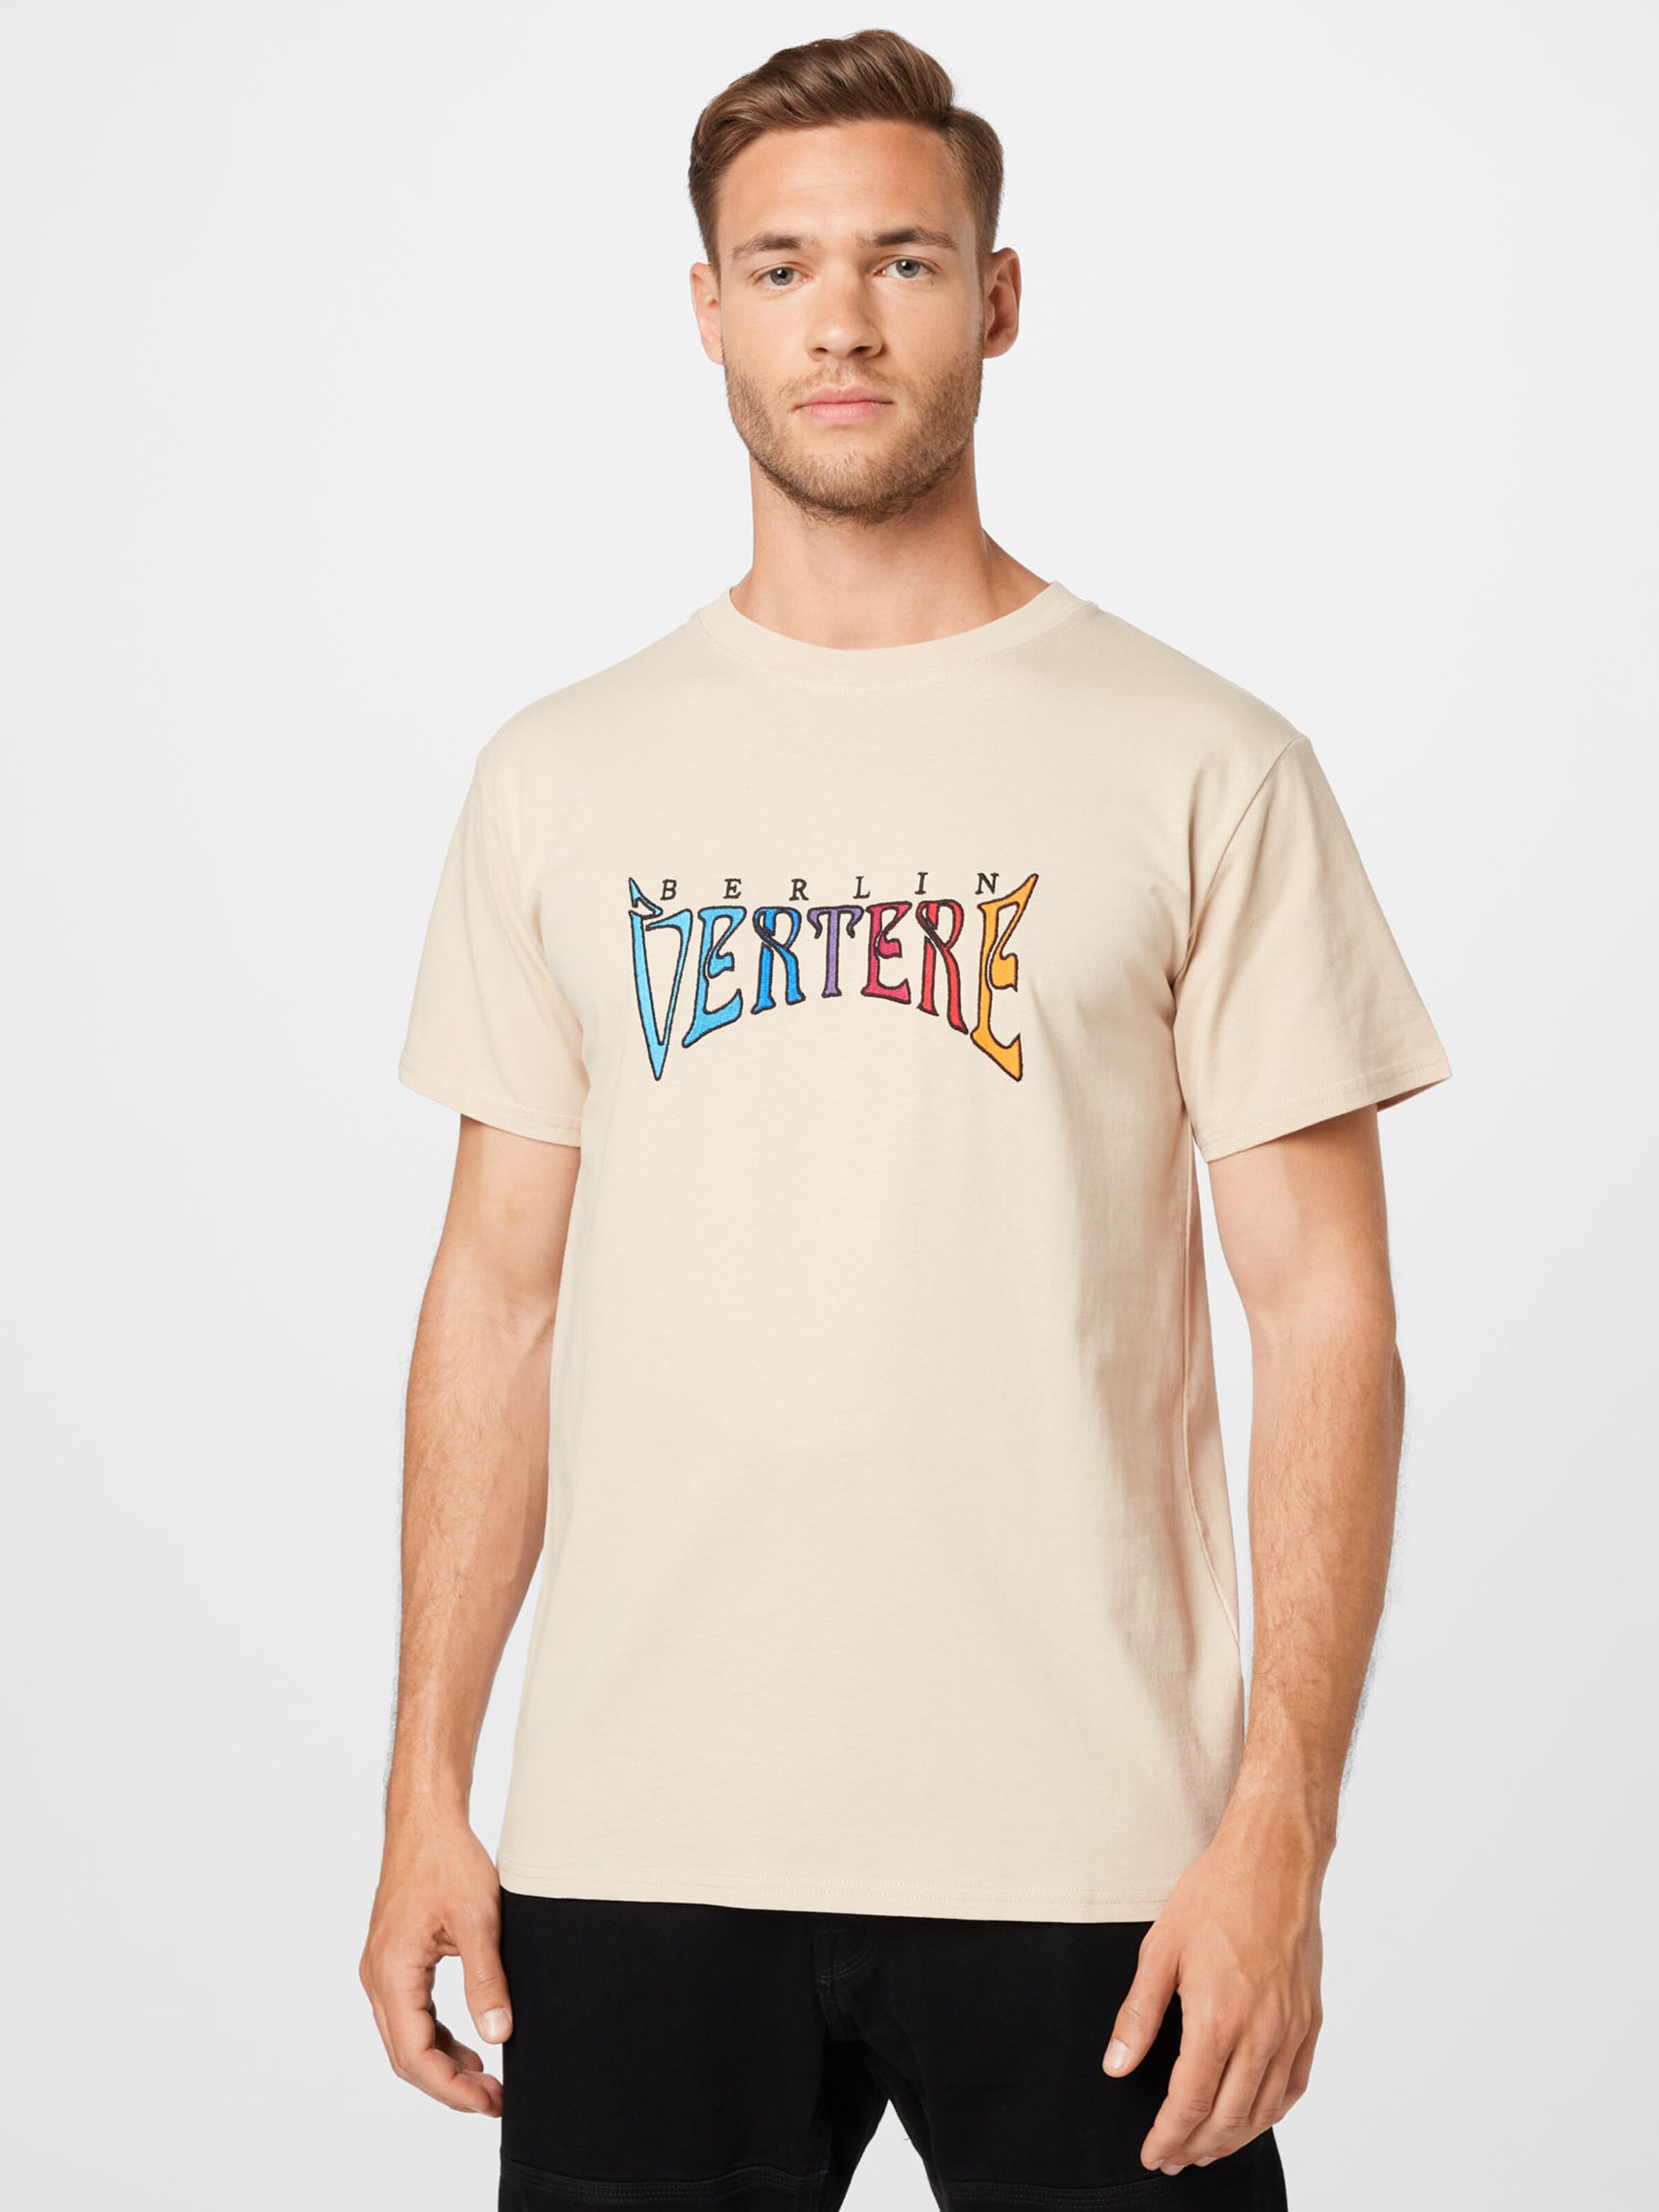 Männer Shirts Vertere Berlin T-Shirt 'ART NOIR' in Sand - WB16709